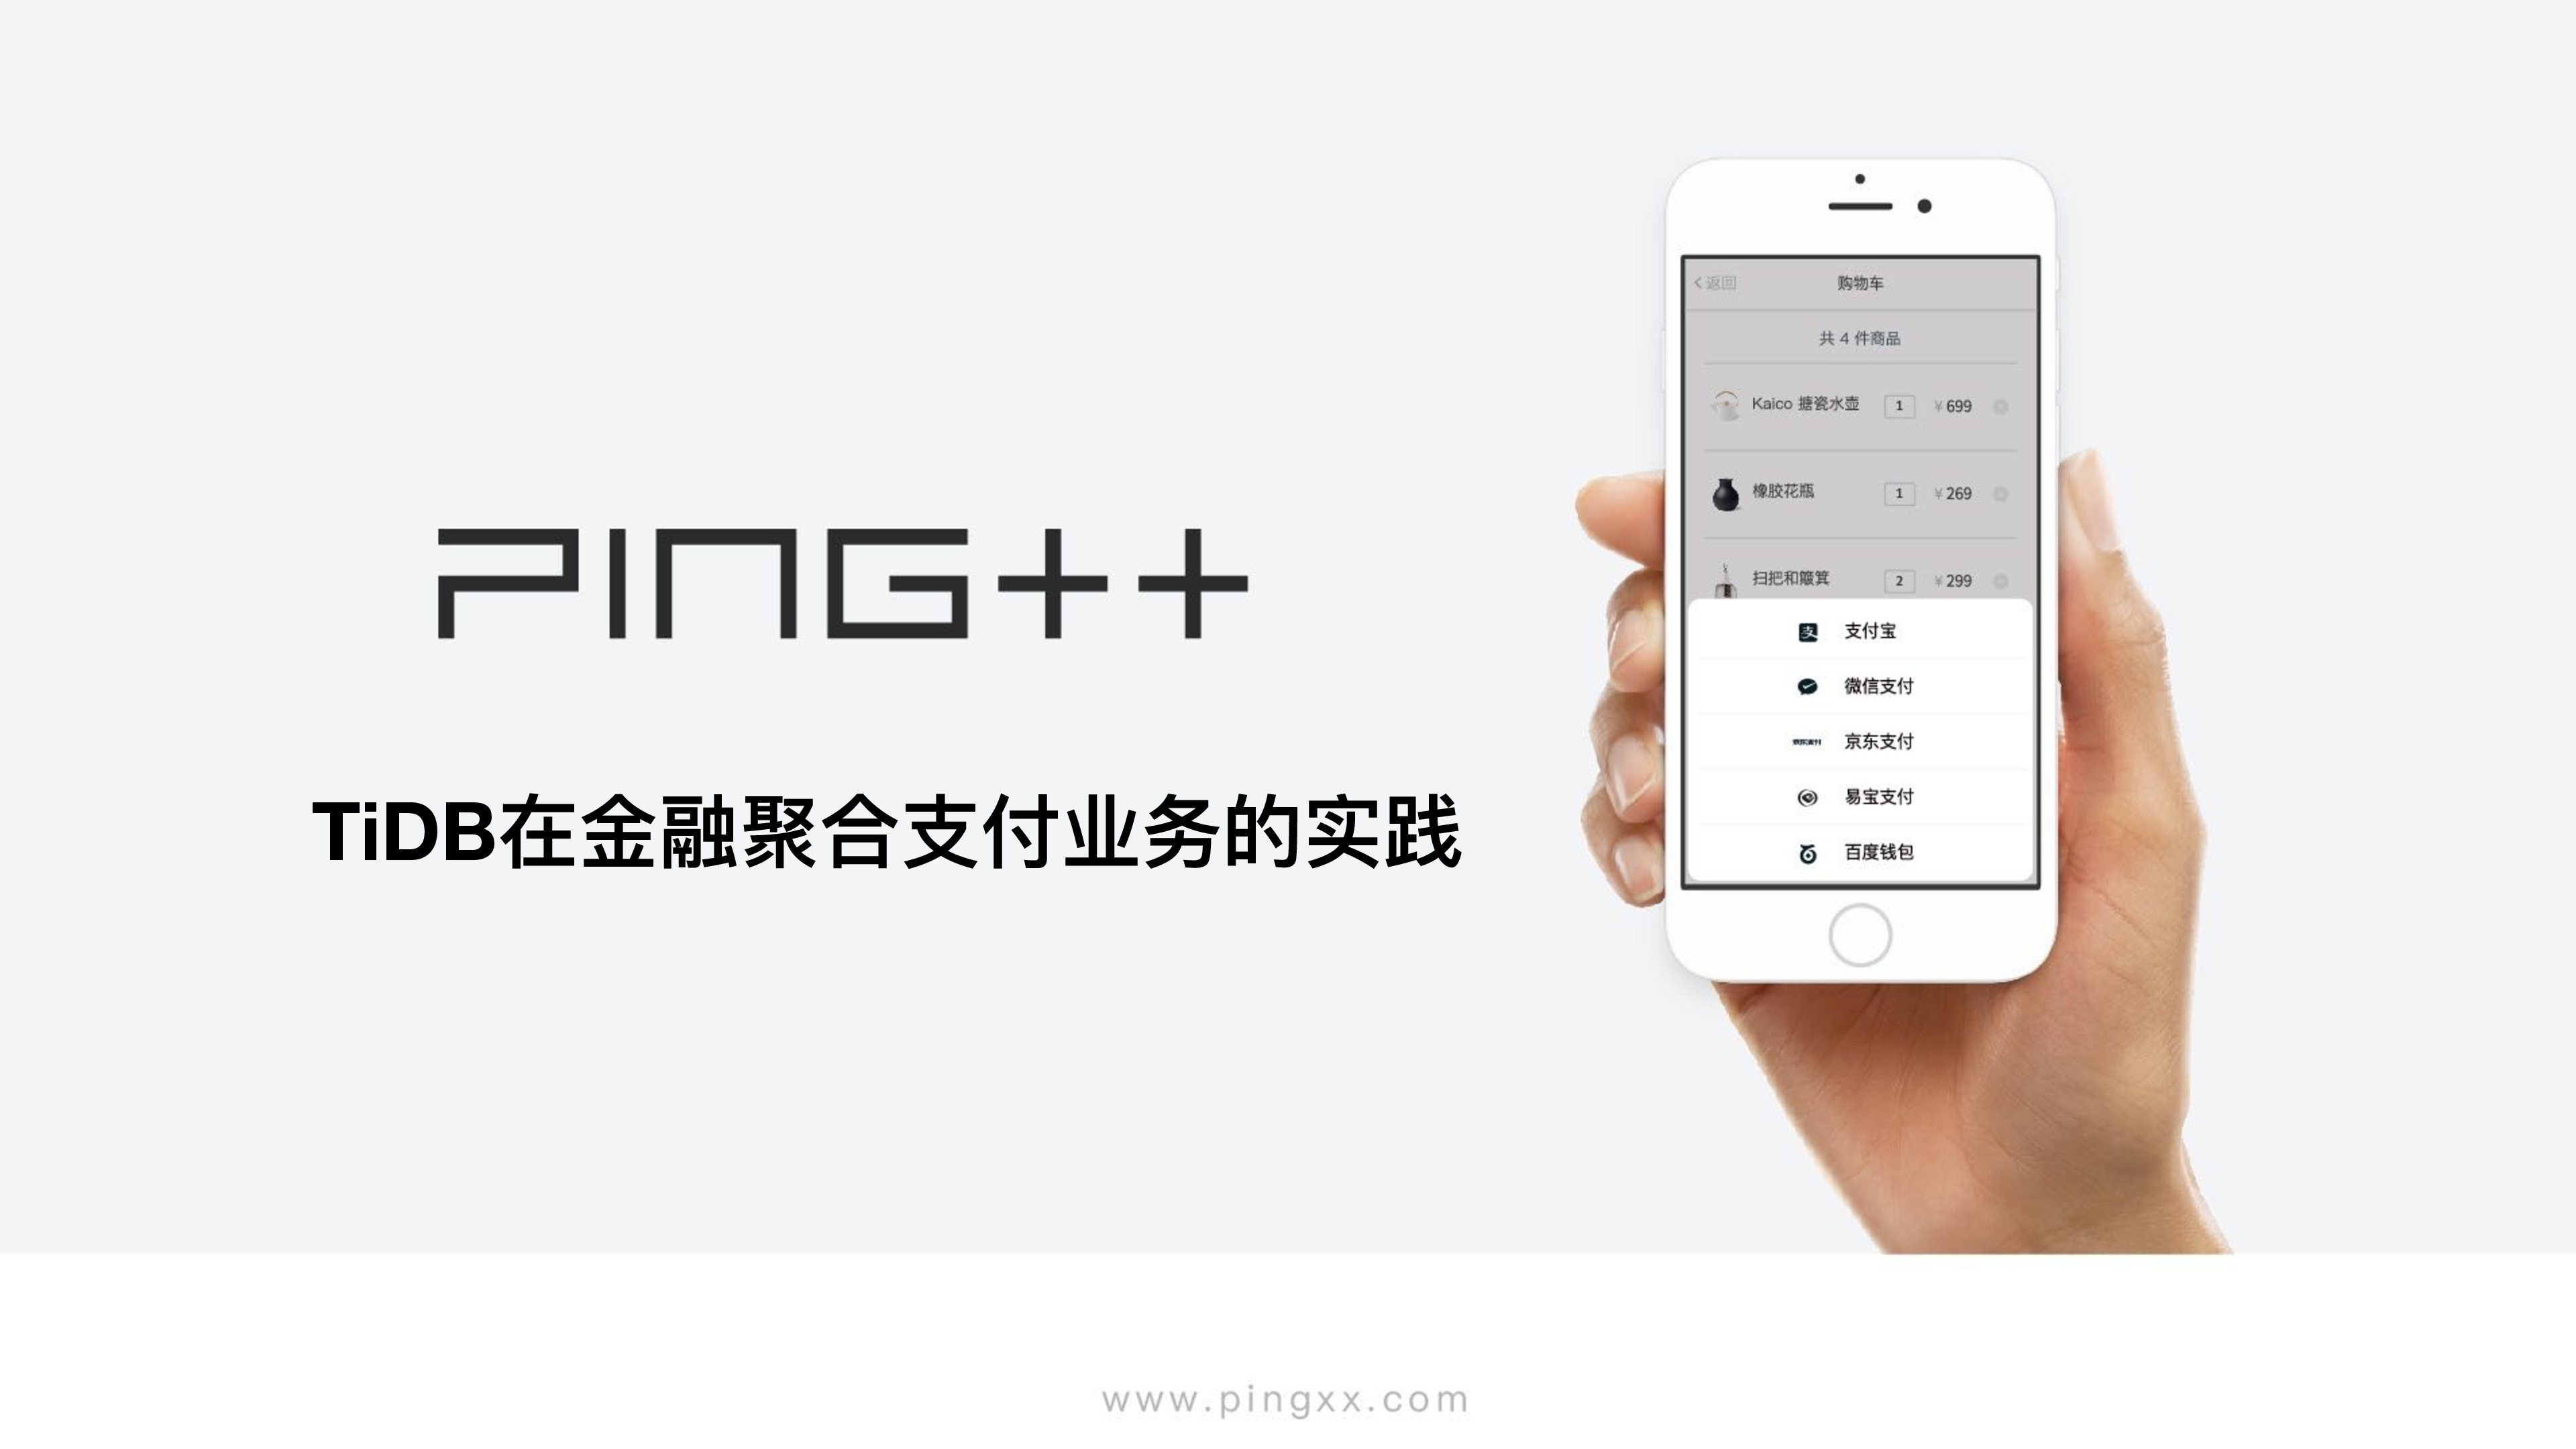 [PingCAP-Meetup-SH-5.26]TiDB在Ping++金融聚合支付下的实践0526